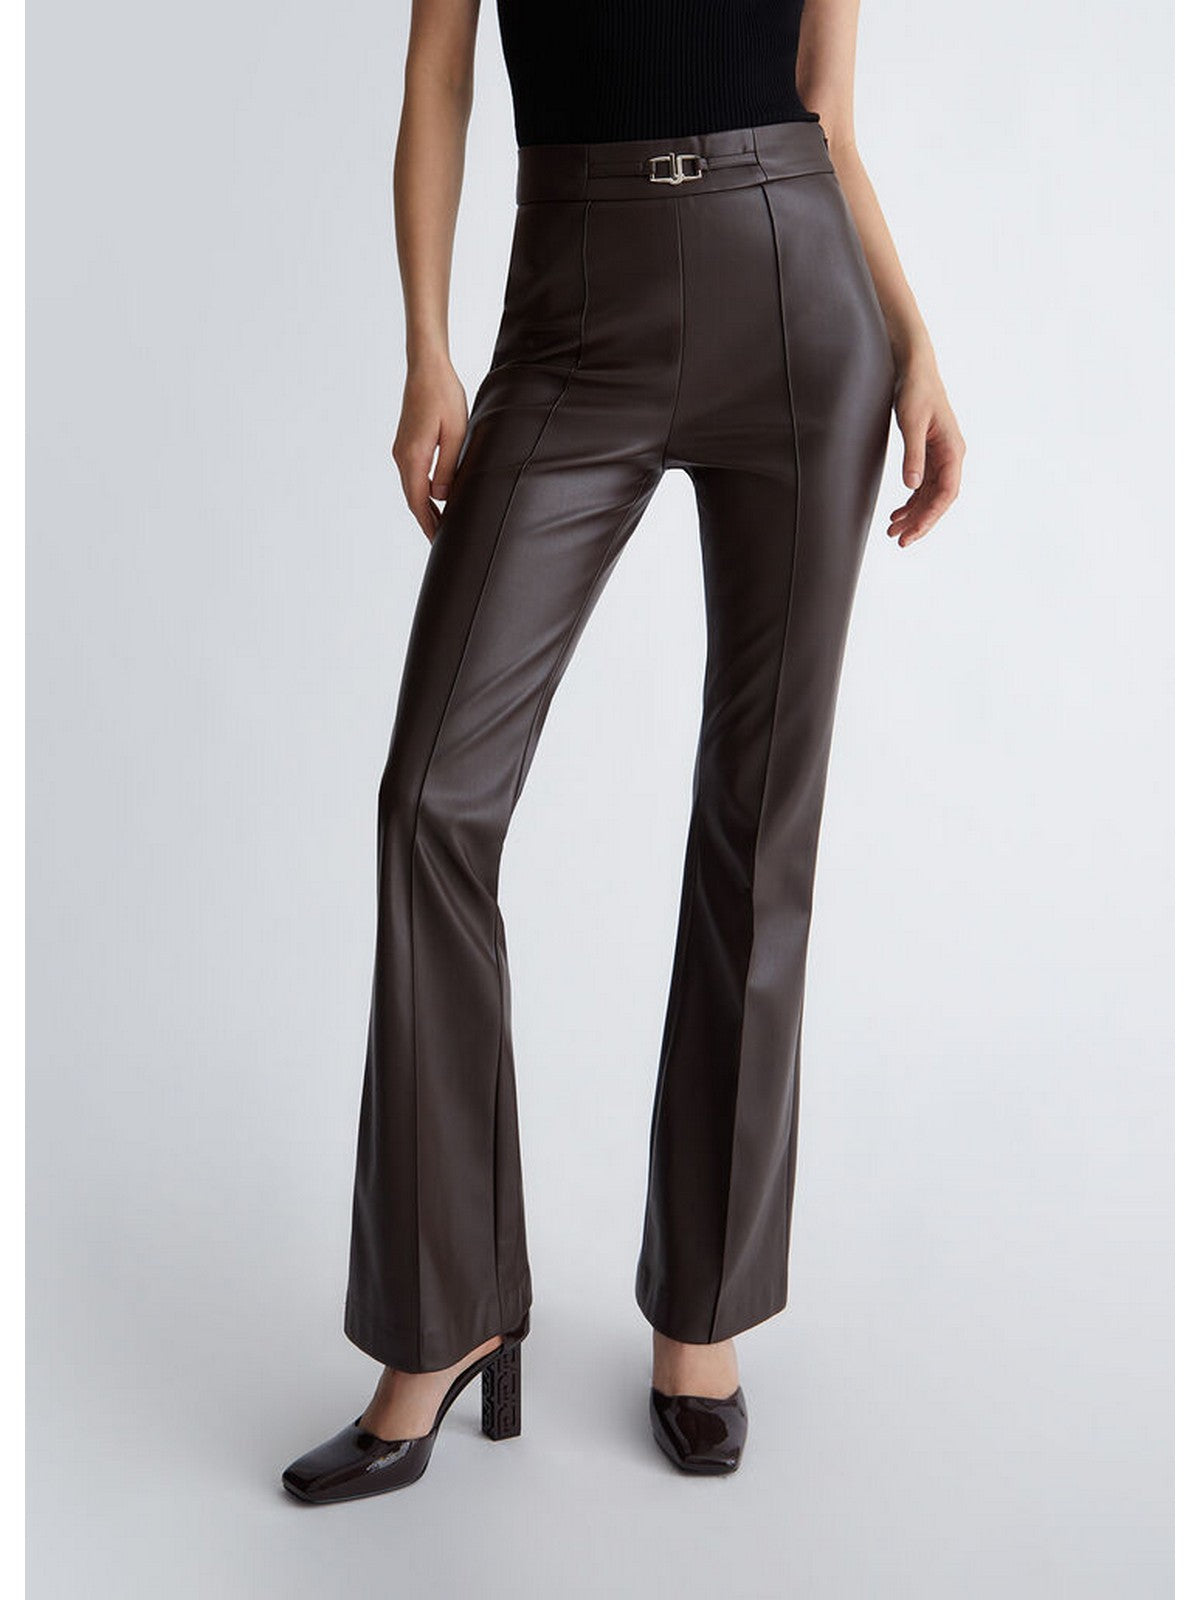 LIU JO BLACK Pantalone Donna  CF3030E0624 X0507 Marrone